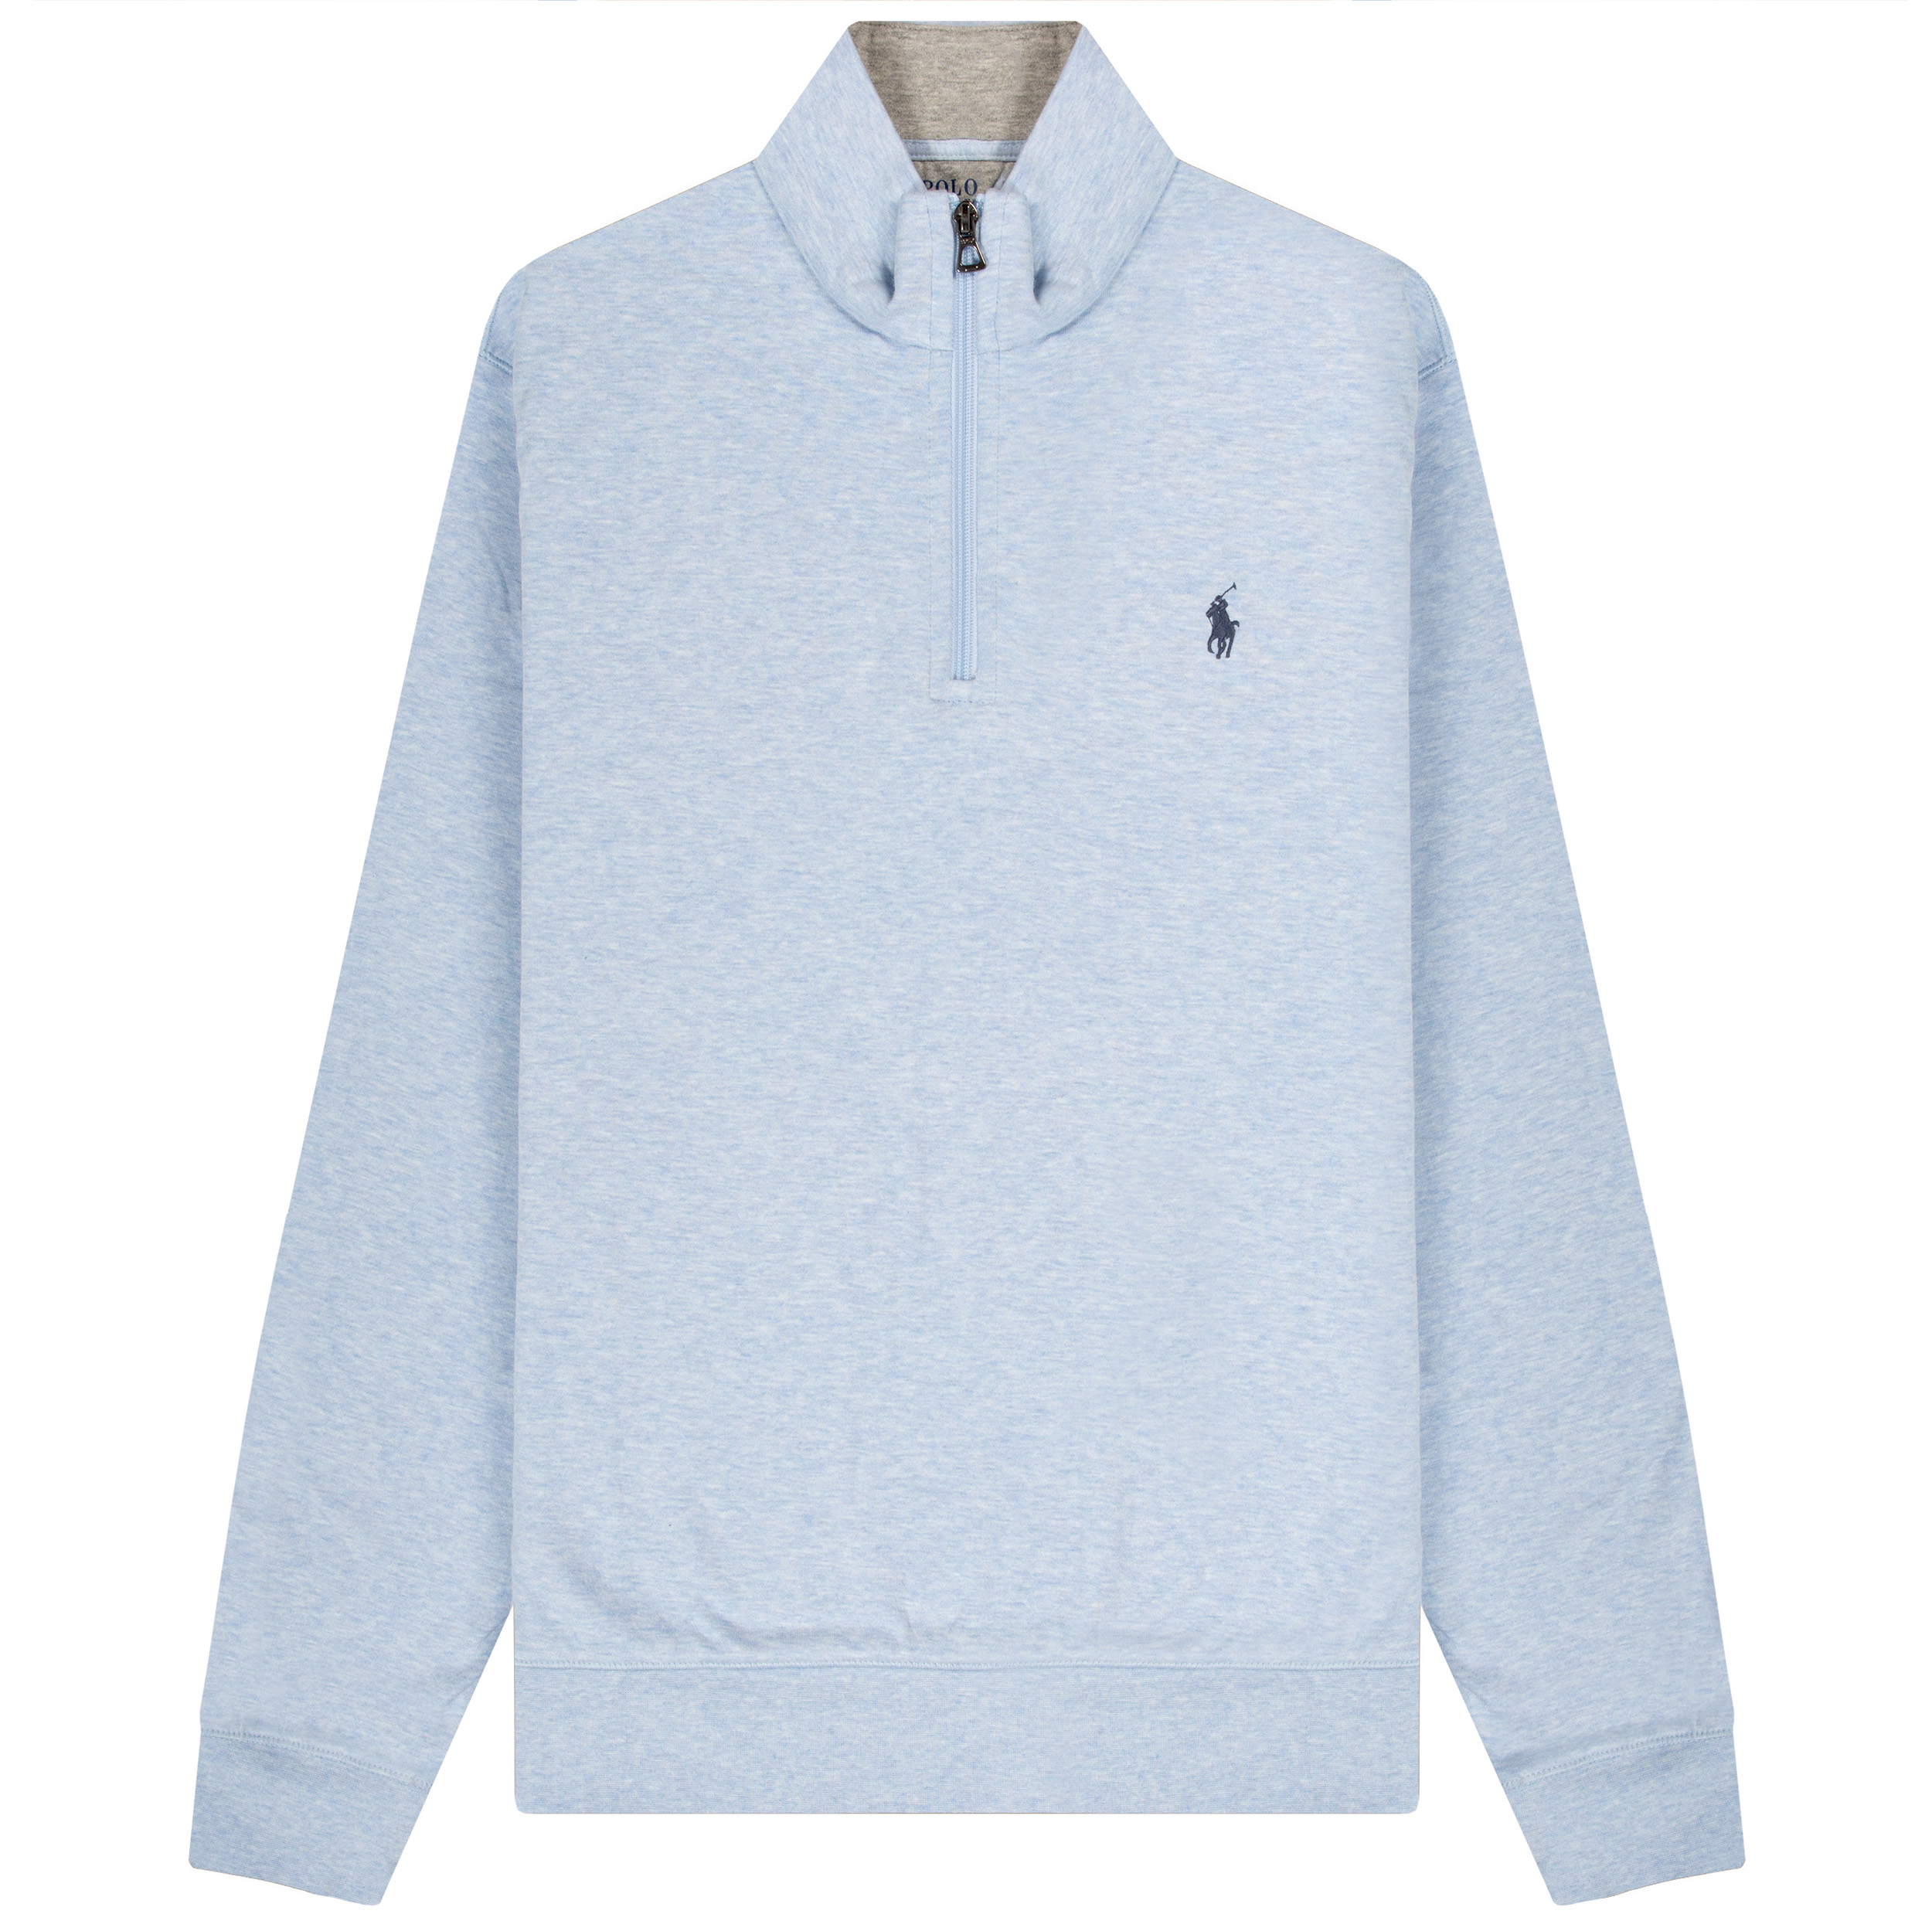 Polo Ralph Lauren Jersey 1/4 Zip Pullover Sweatshirt Blue Heather